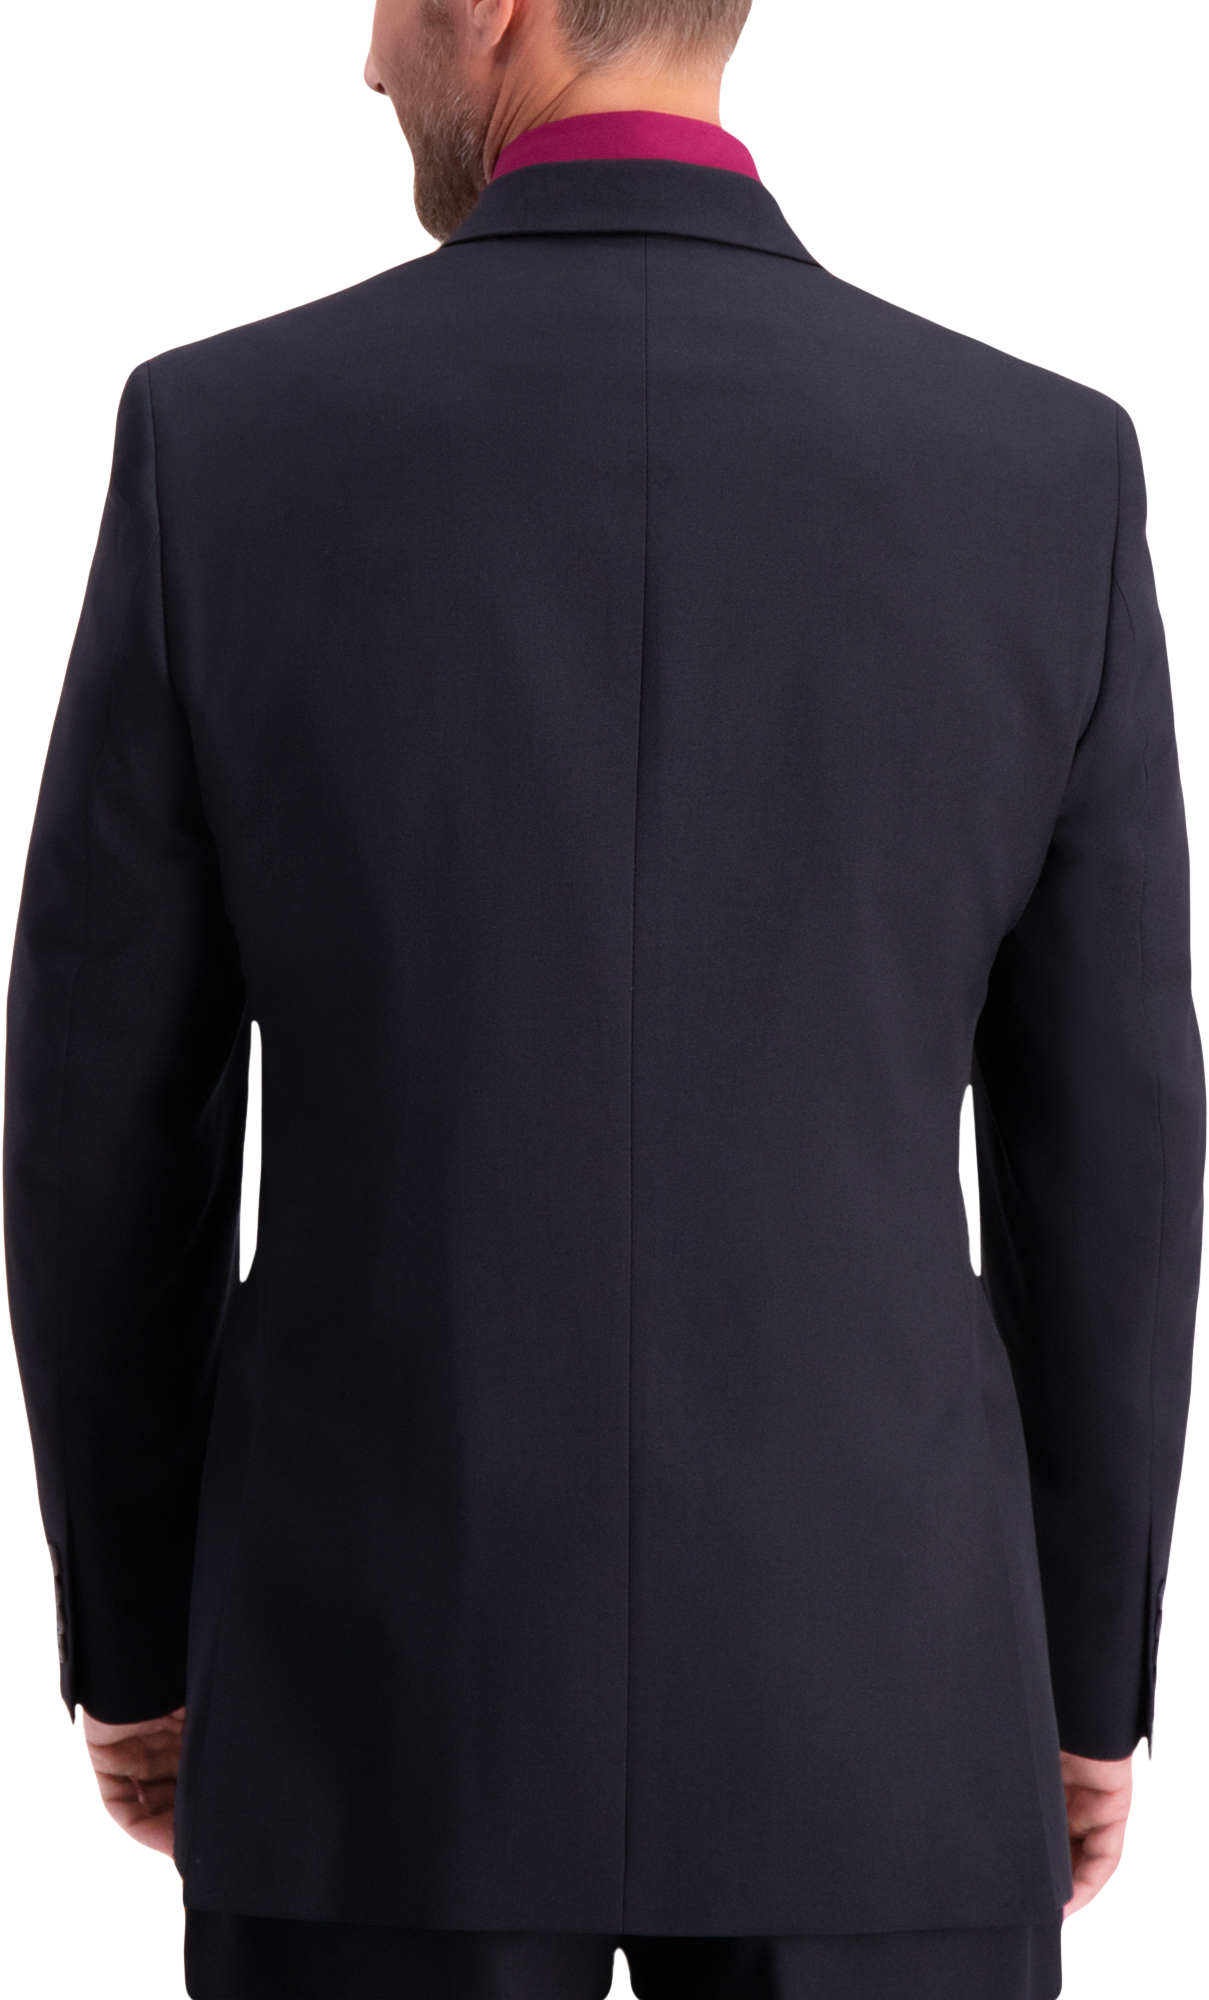 Classic Fit Suit Separates Jacket